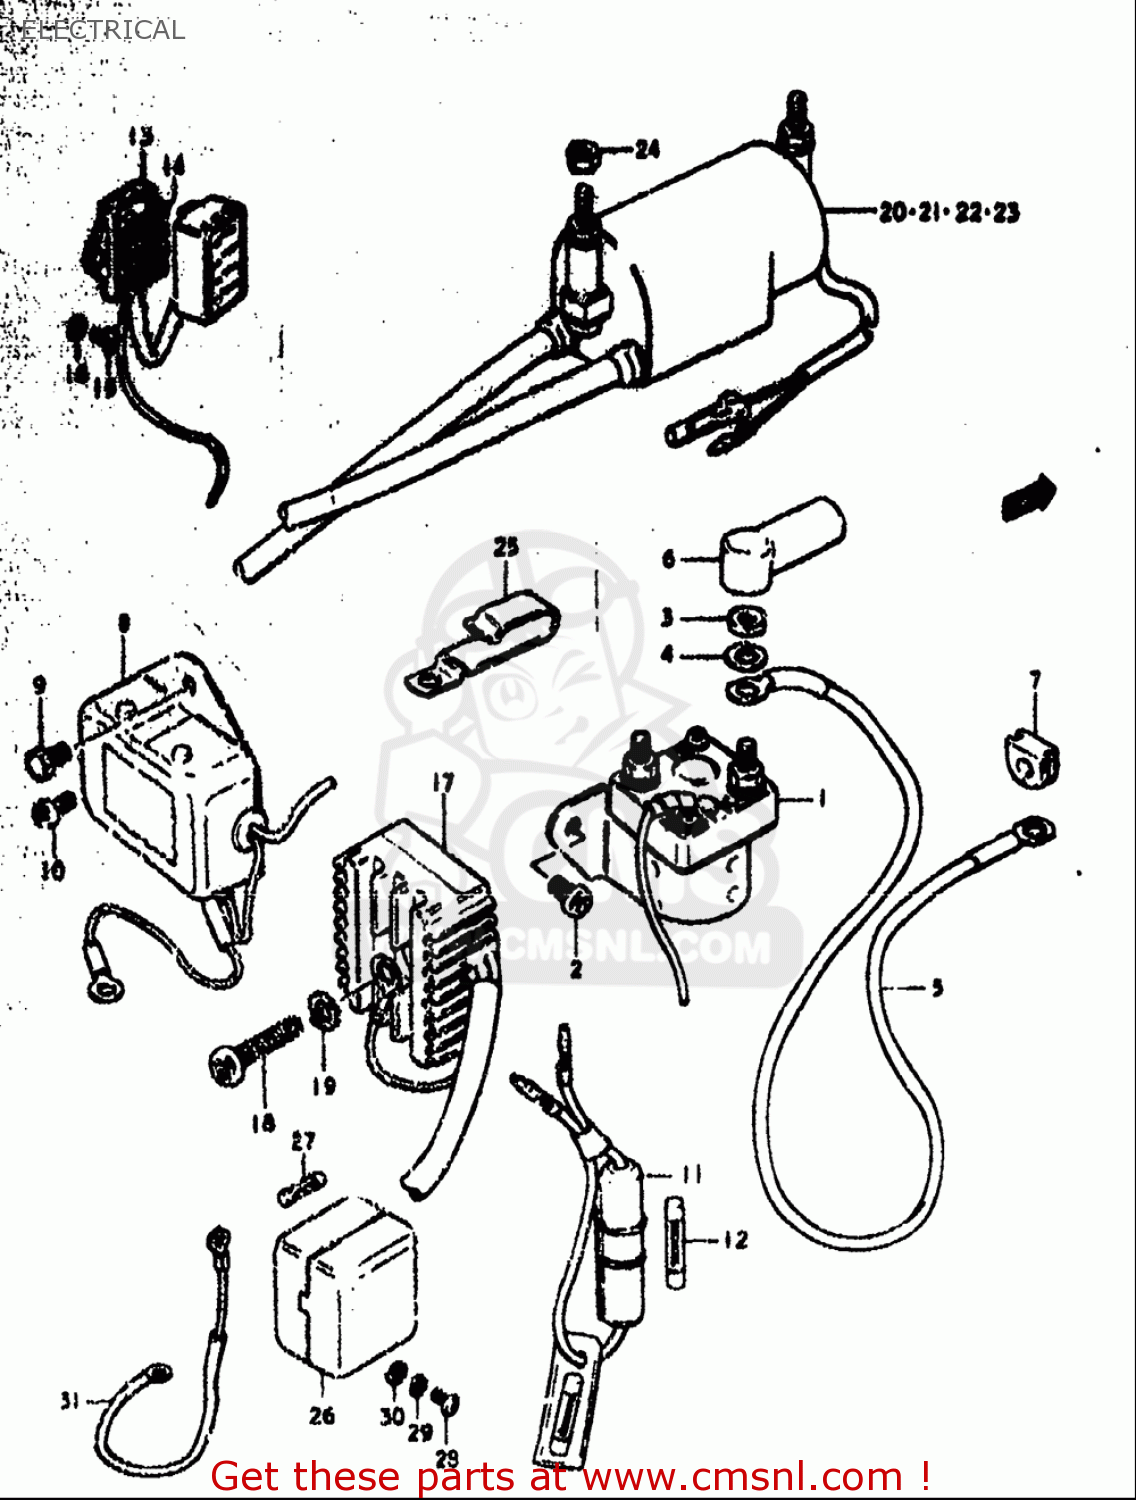 1979 suzuki gs550 wiring diagram